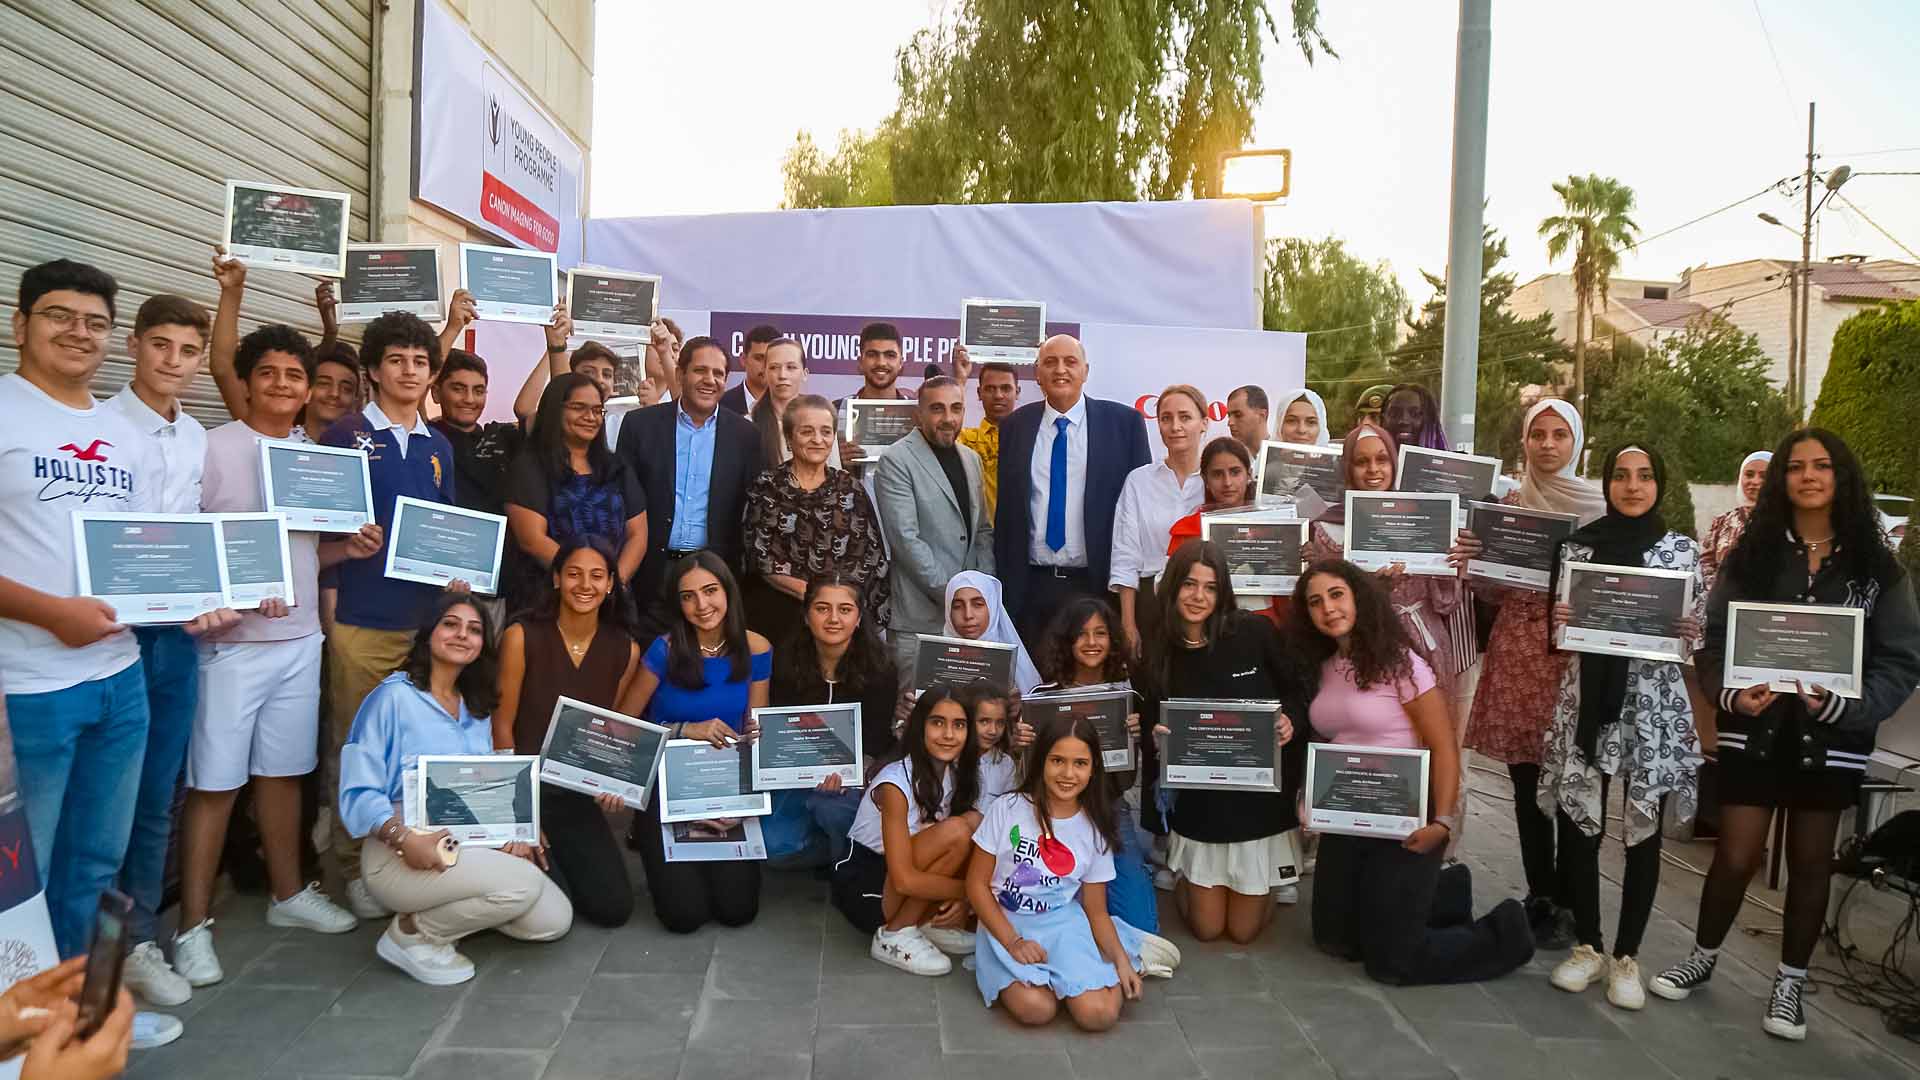 كانون تحتفل بإنجازات طلاب "برنامج الشباب" في الأردن بقصص ملهمة